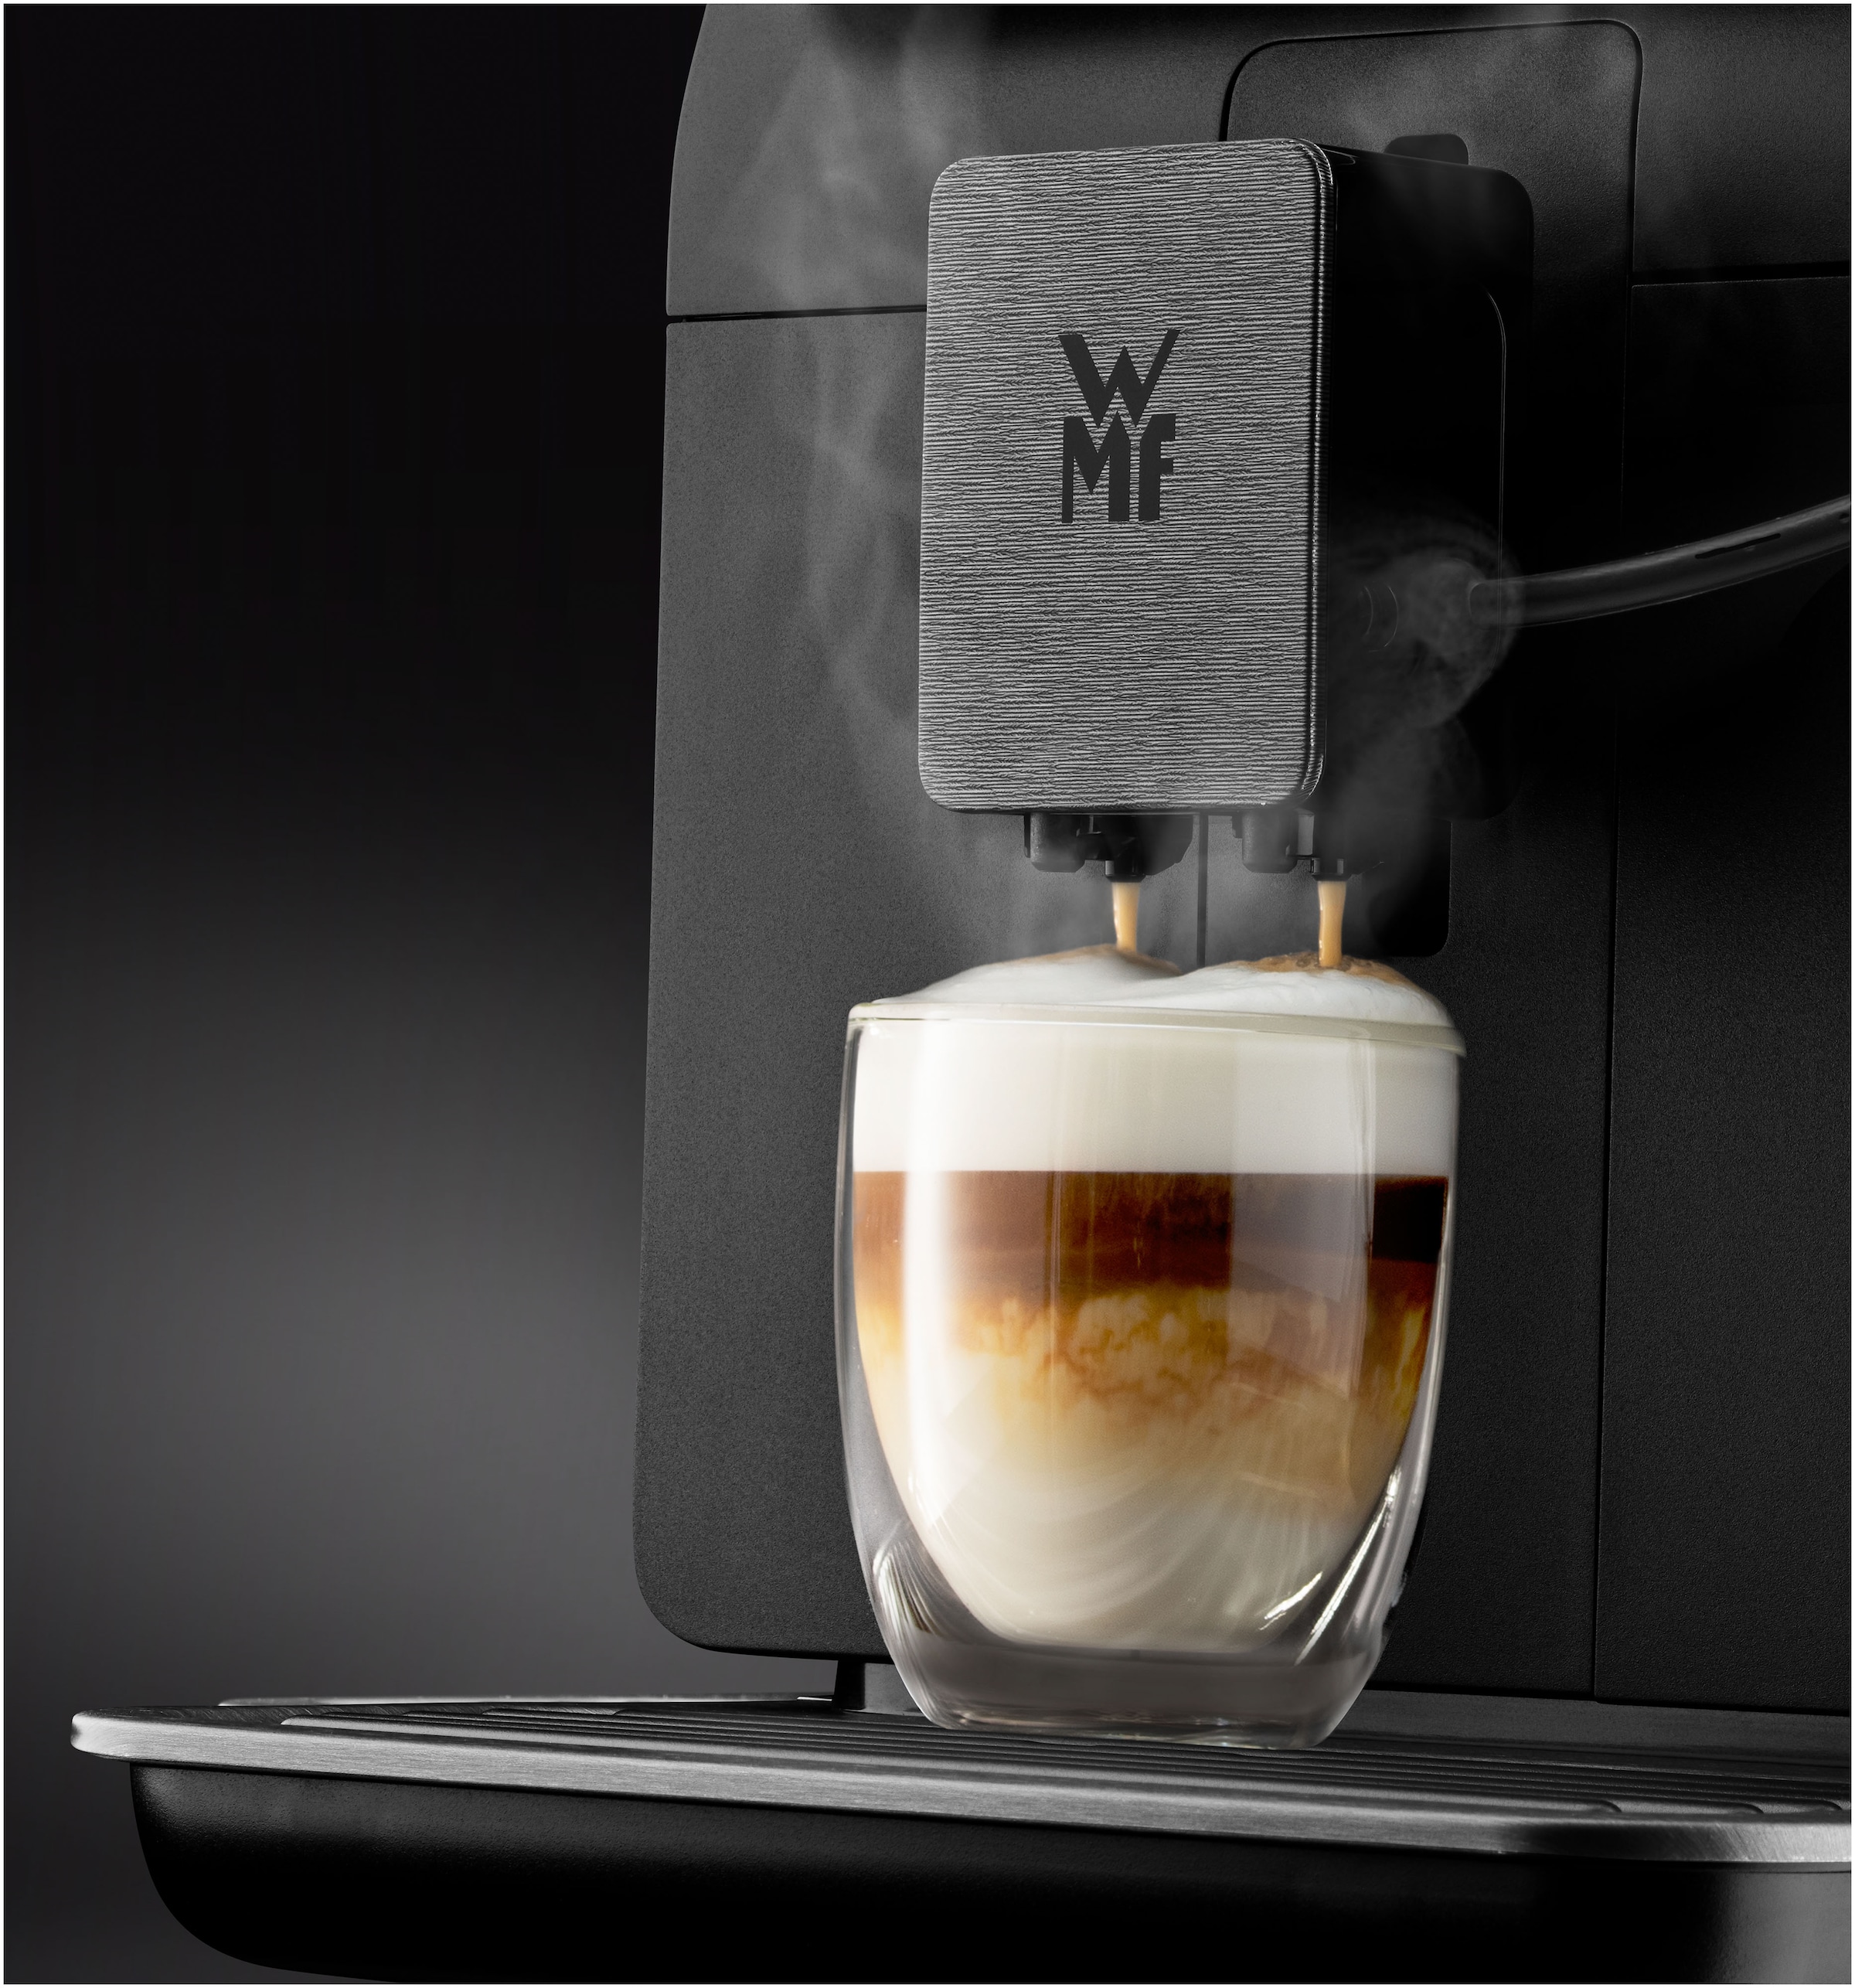 WMF Kaffeevollautomat »Perfection 740 CP820810«, intuitive Benutzeroberfläche, perfekter Milchschaum, selbstreinigend